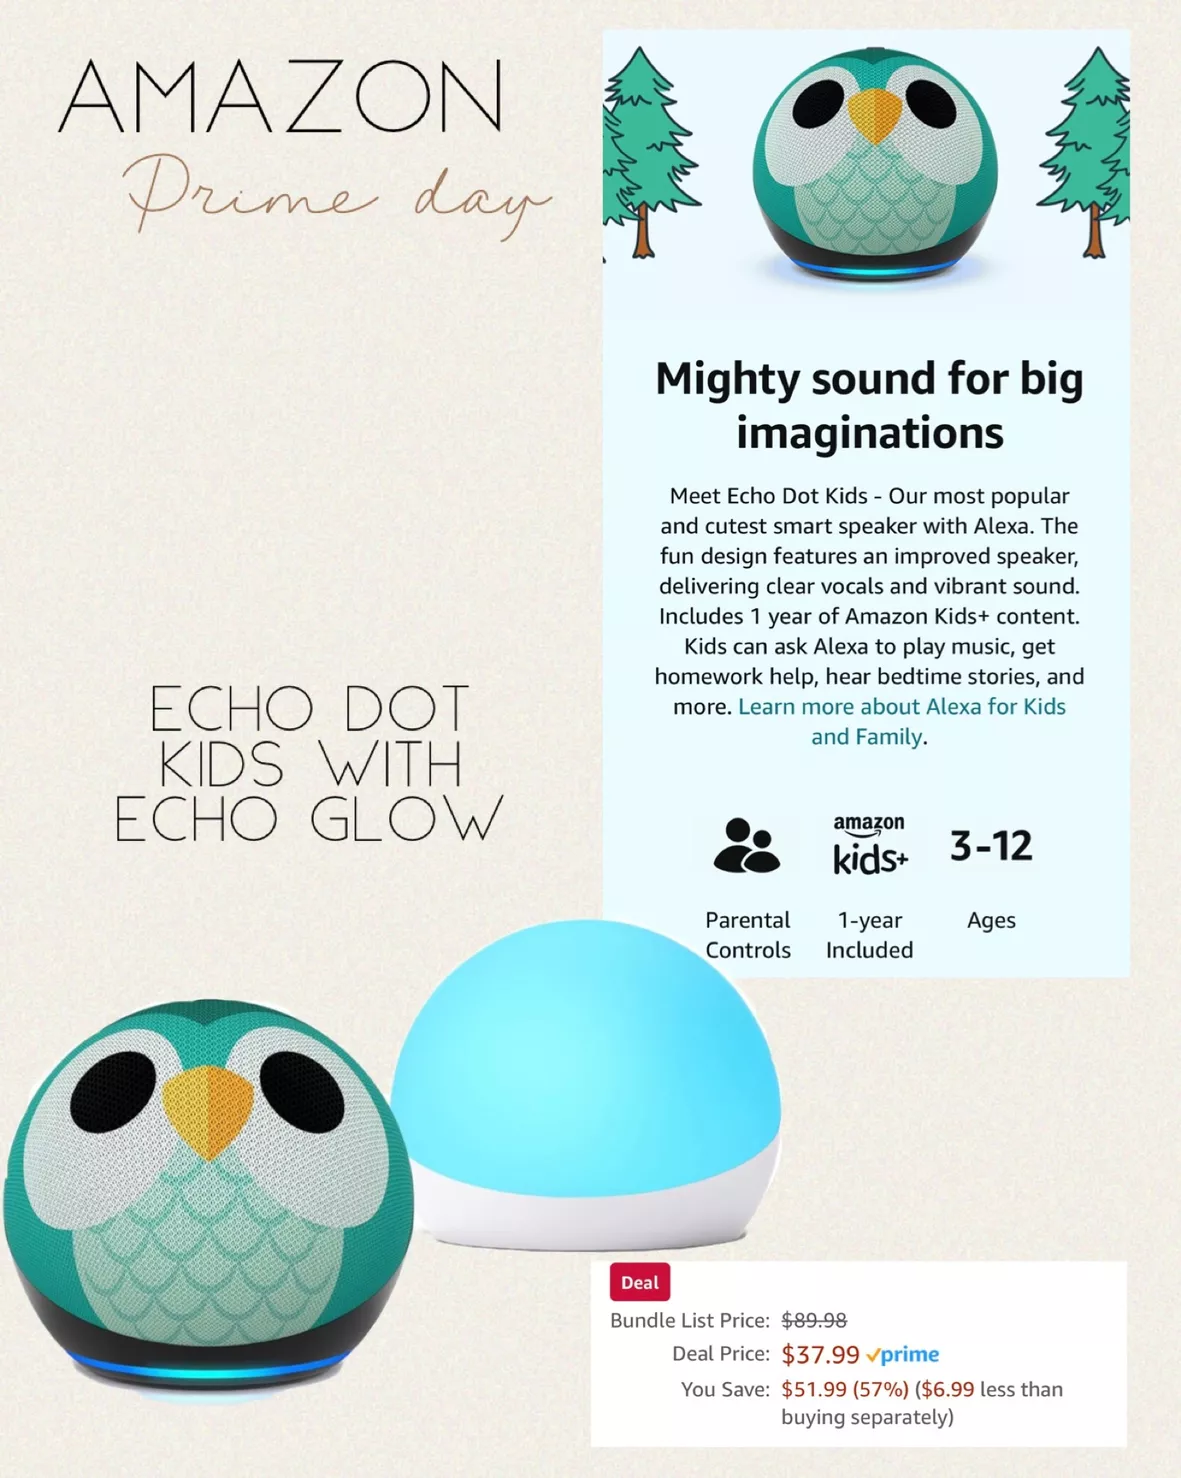 Echo Dot (4th Gen) Kids + Echo Glow